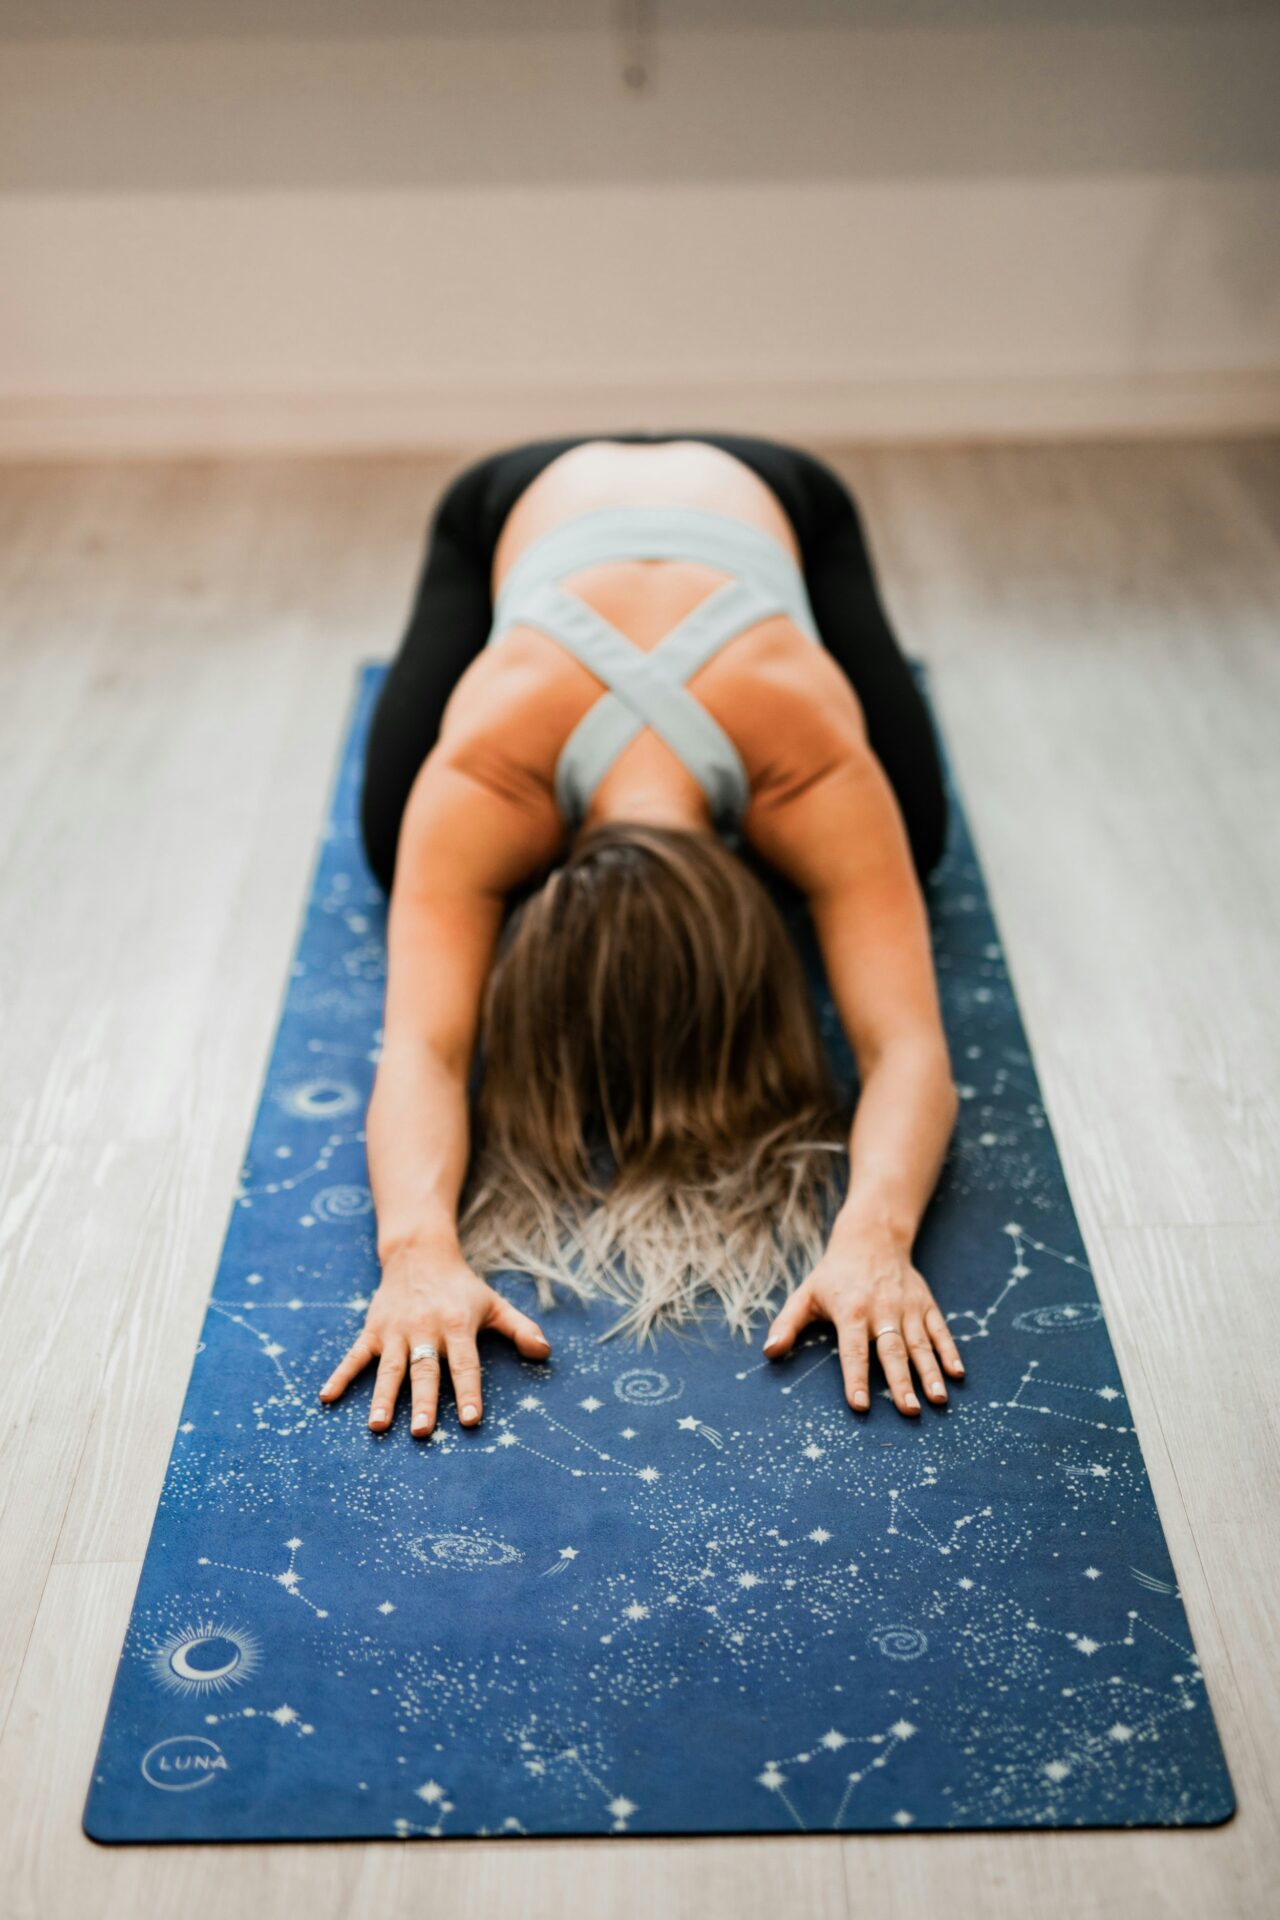 Eine Frau praktiziert auf einer mit Sternbildern bedruckten Yogamatte eine Yin-Yoga-Dehnung, bei der sie ihren Oberkörper nach vorne über ihre ausgestreckten Beine beugt. Die Pose fördert Entspannung und Erdung, was in Yin Yoga Online-Sitzungen angestrebt wird.